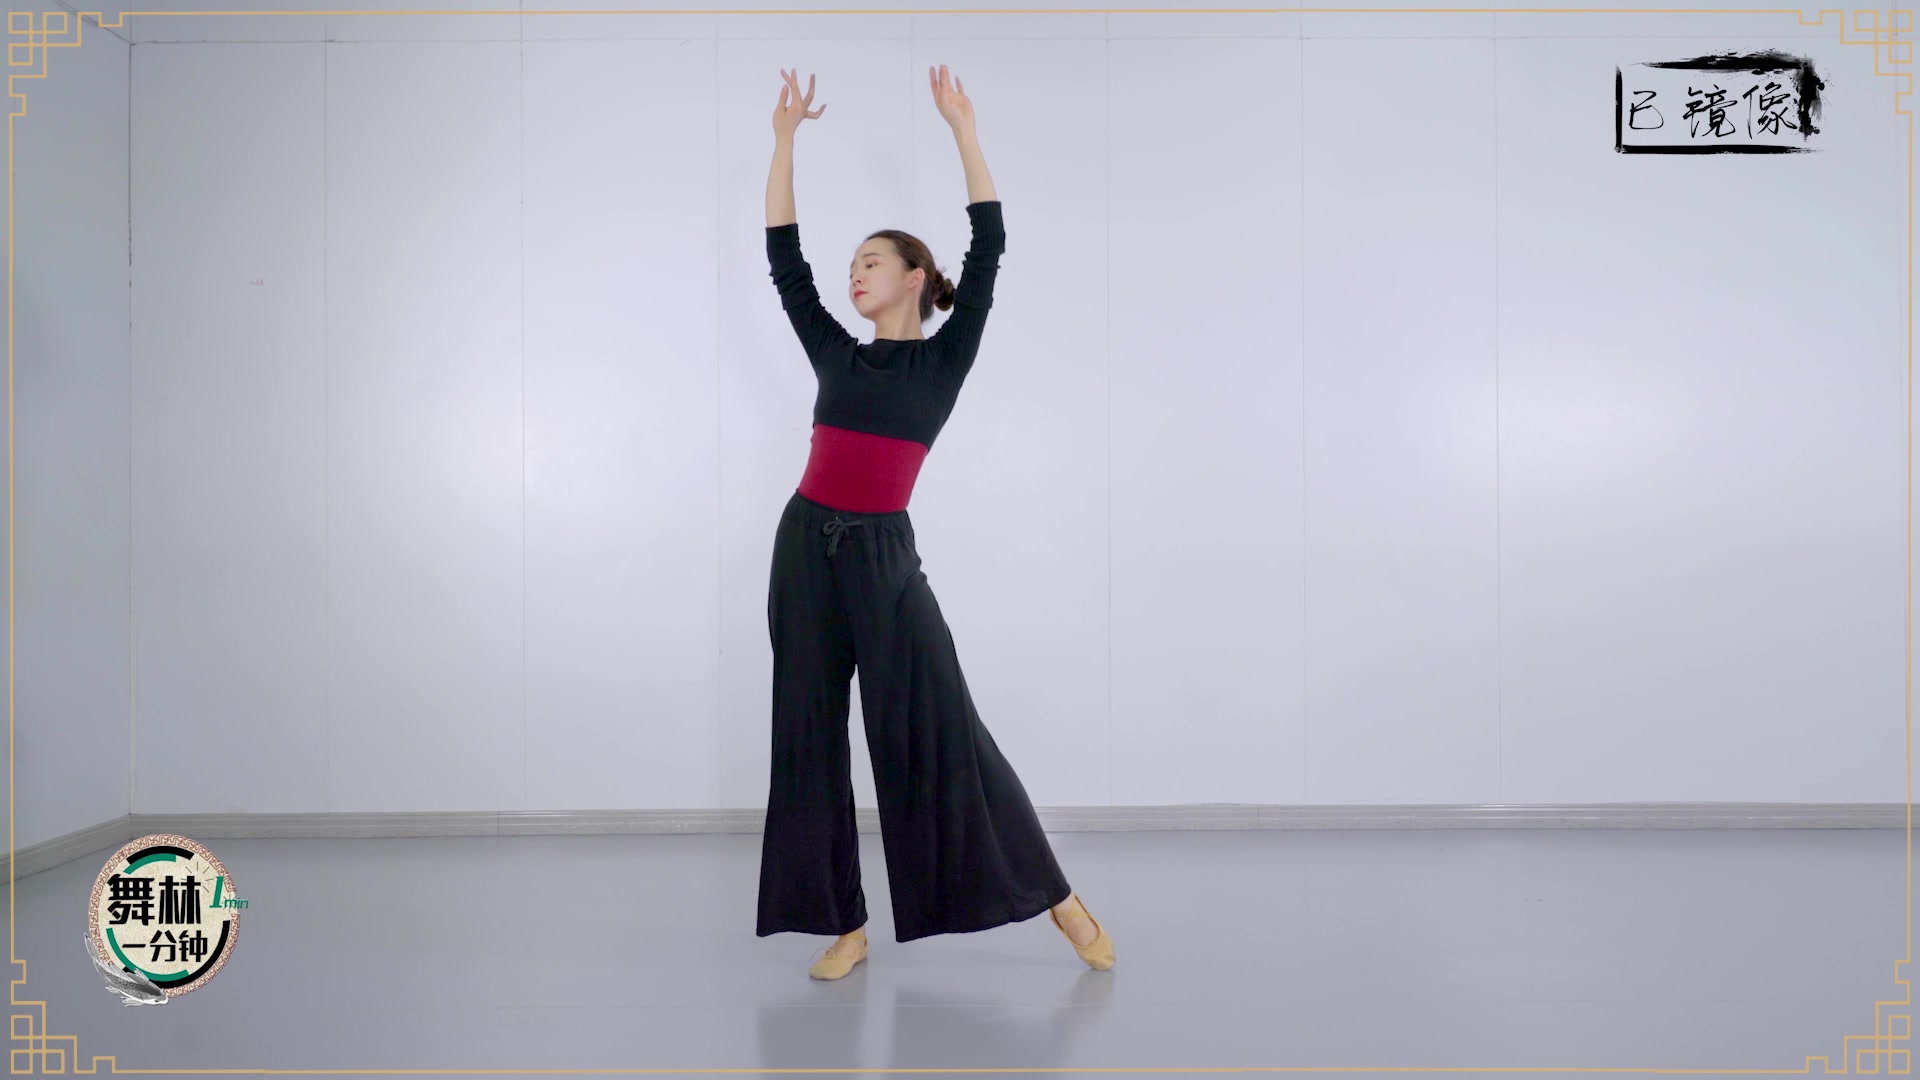 【舞林一分钟】中国舞《赤伶》全景舞蹈教学示范完整版